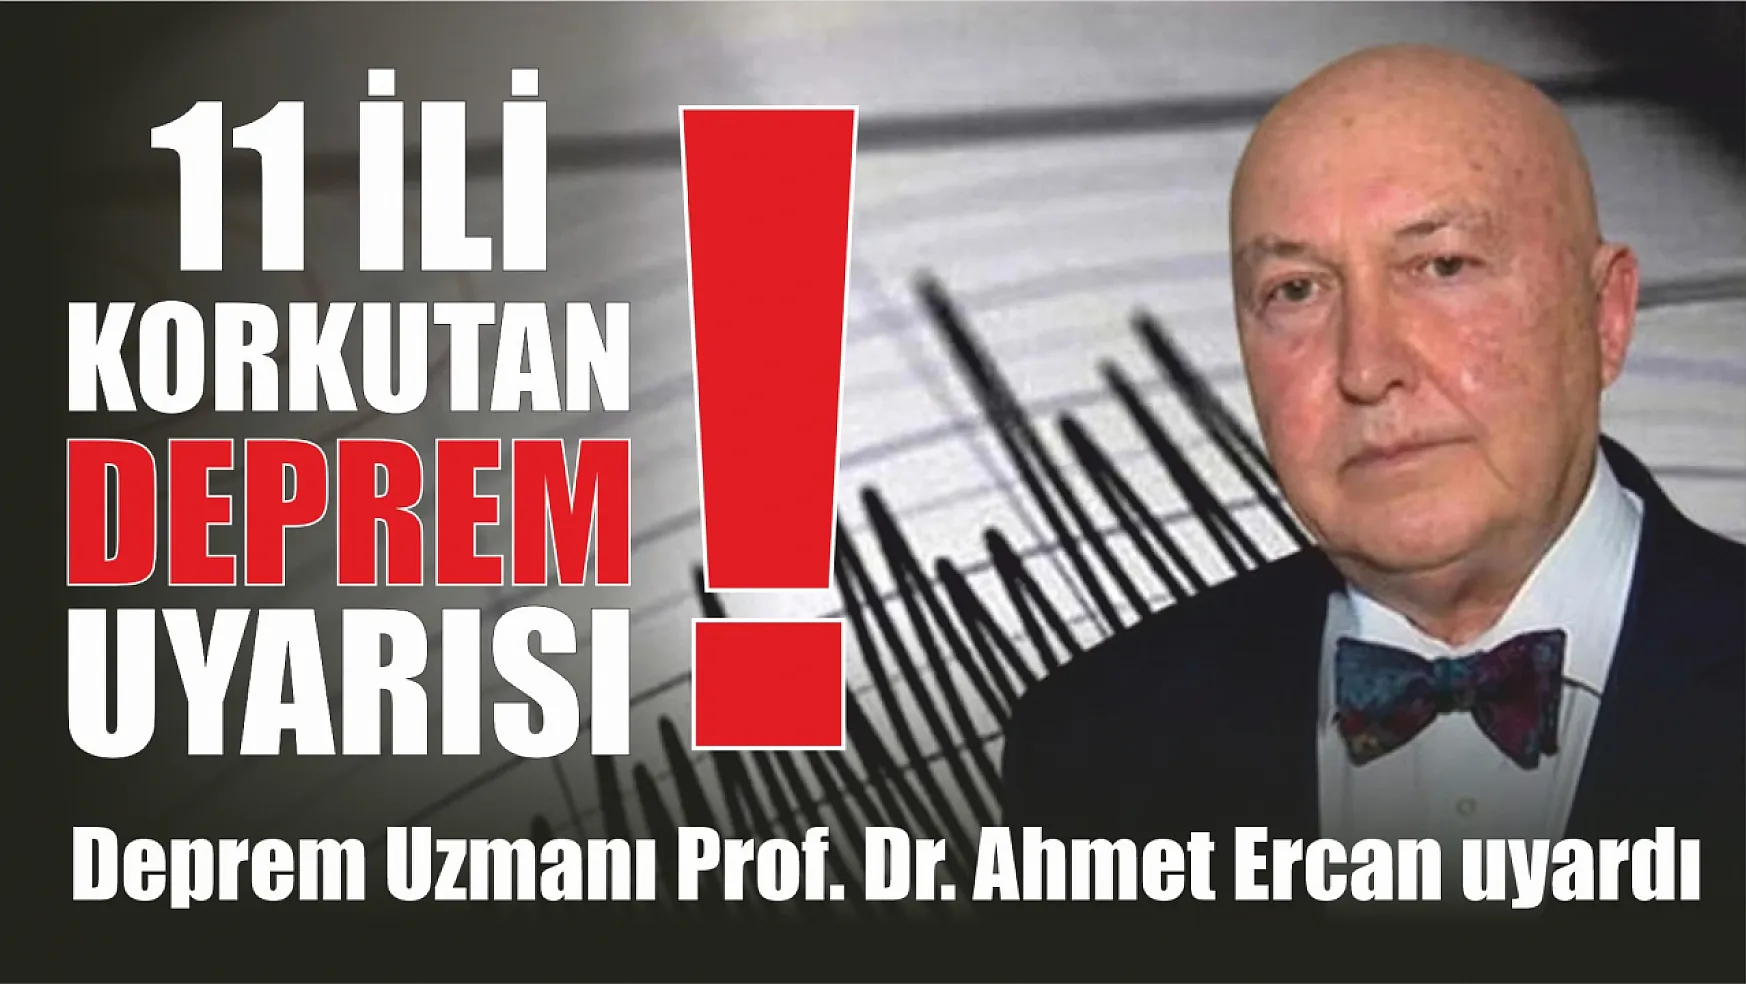 Deprem Uzmanı Prof. Dr. Ahmet Ercan'dan 11 İli Korkutan Deprem Uyarısı!